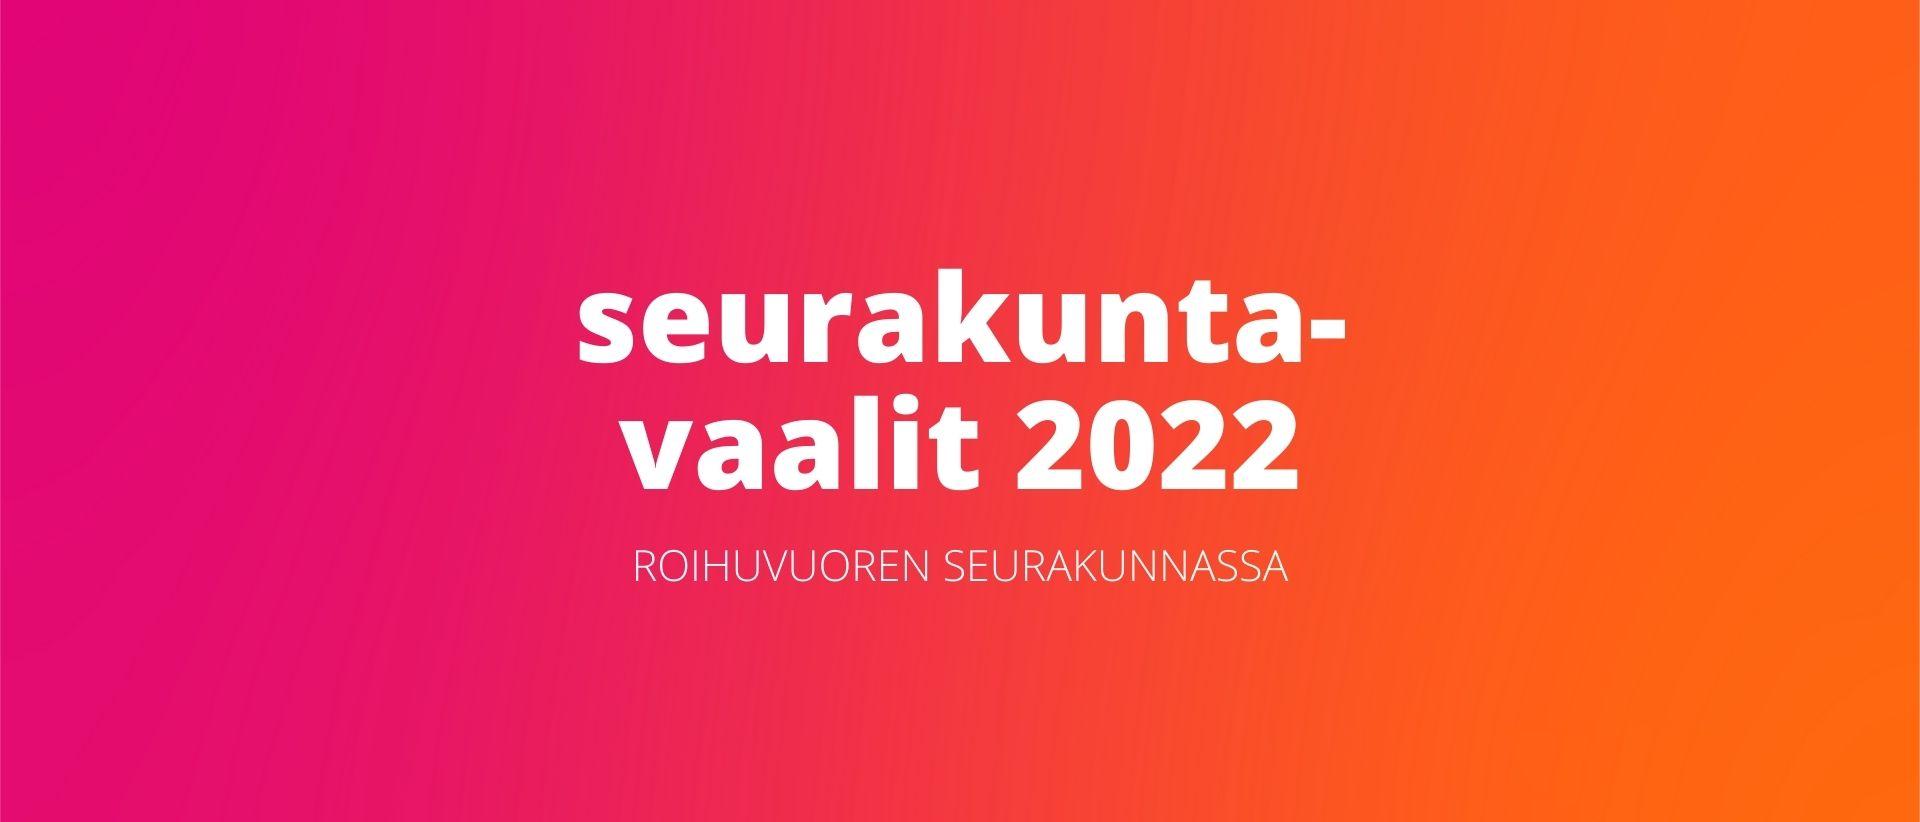 Teksti Seurakuntavaalit 2022 Roihuvuoren seurakunnassa. Vaali-ilmeen mukainen punaoranssisävyinen pohja.